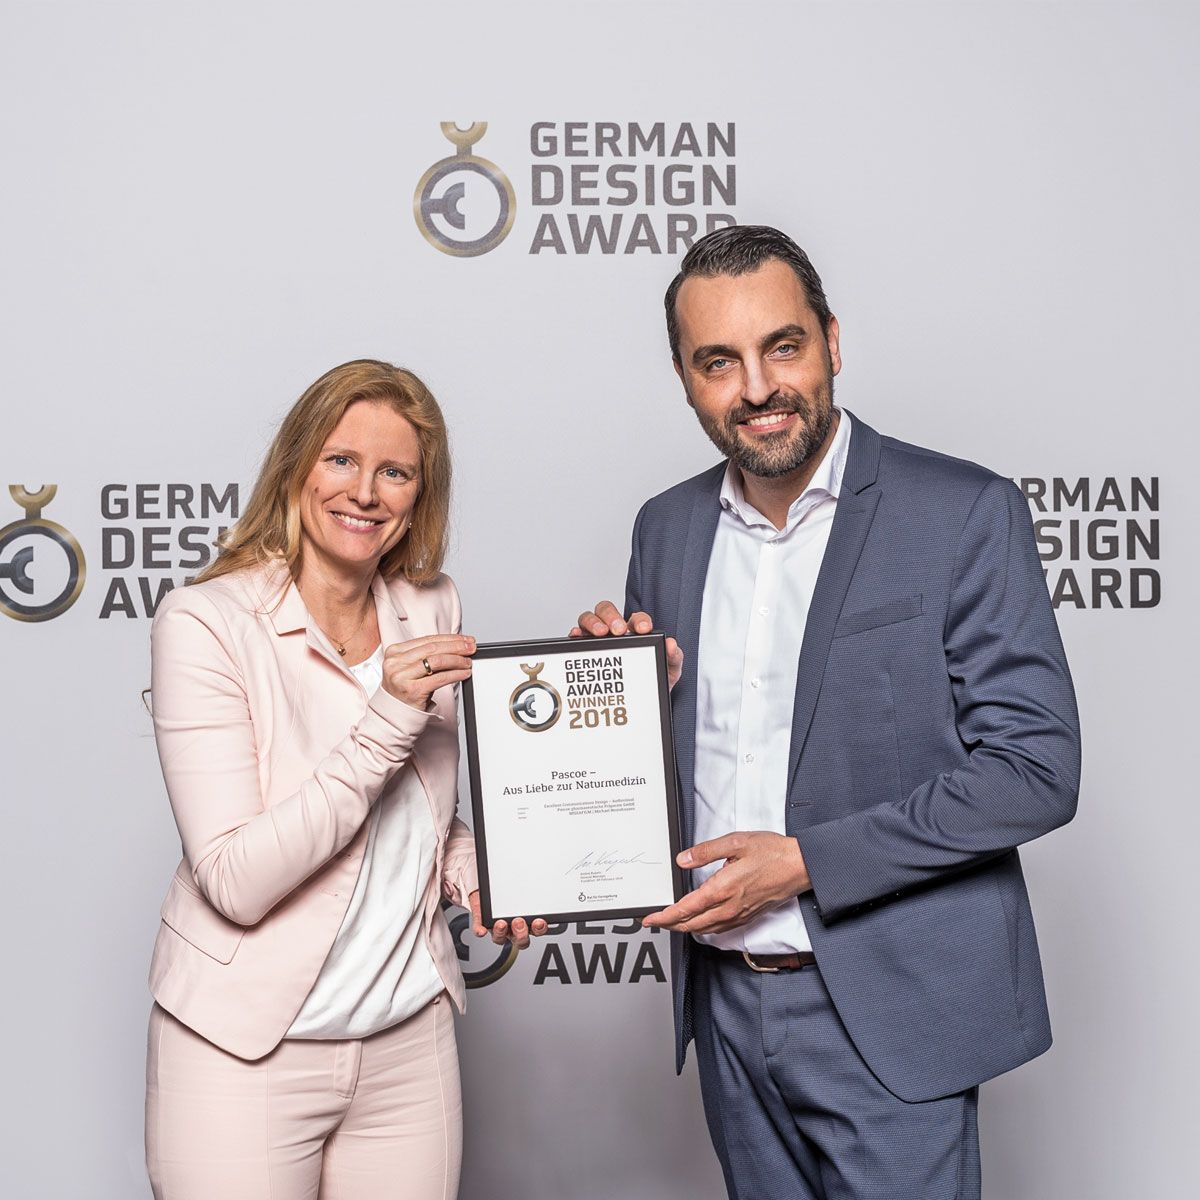 German Design Award 2018 für den Pascoe Imagefilm